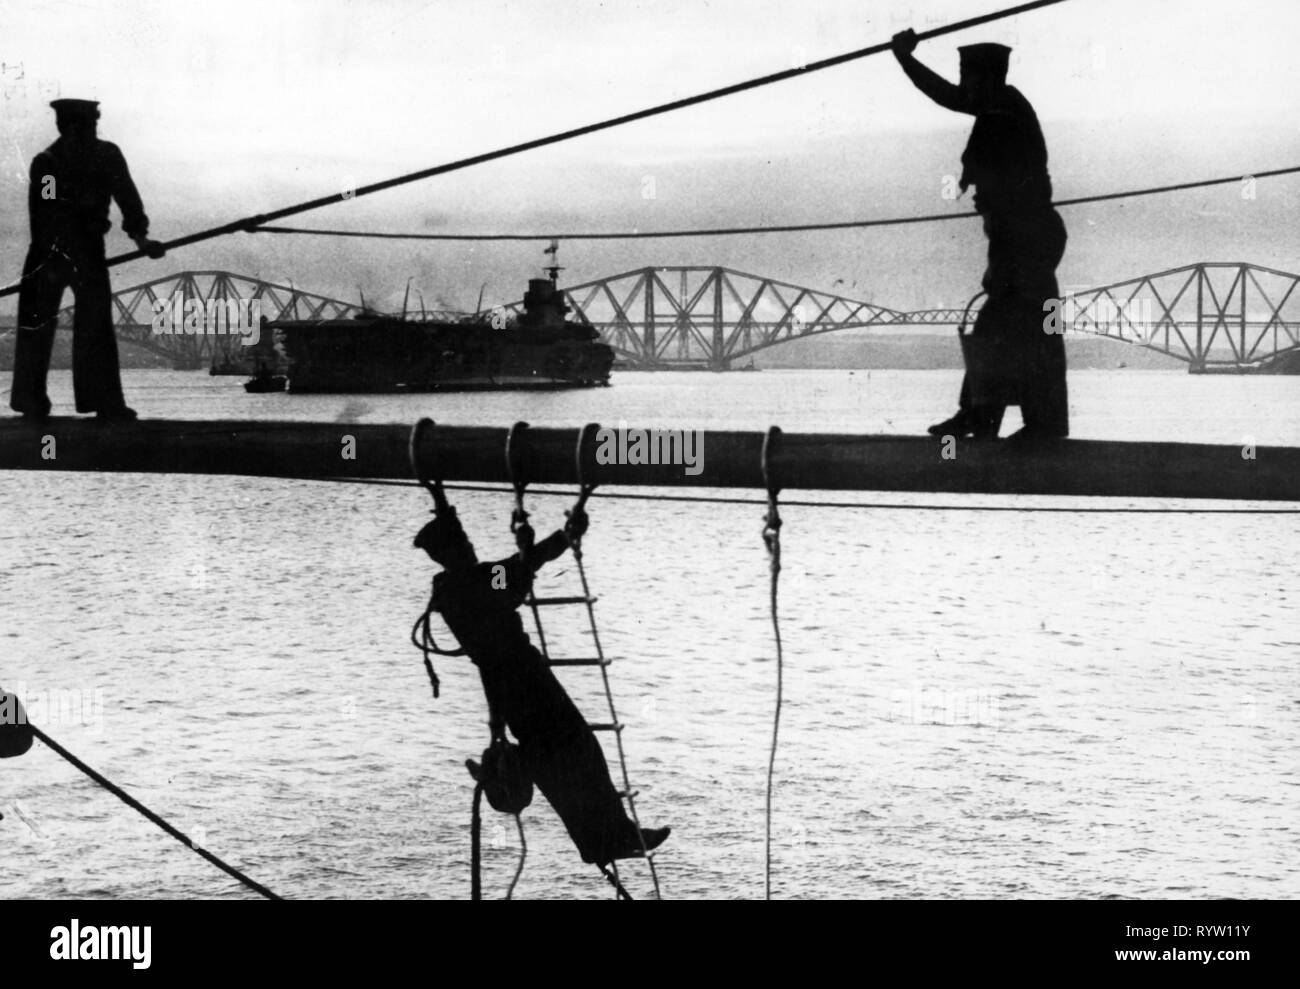 Militär, Großbritannien, Marine, Sailor, stehend auf einem Mast für Reinigung, Vorbereitungen für die Parade vor dem König Edward VIII., Erhabene, Schottland, 1936, Additional-Rights - Clearance-Info - Not-Available Stockfoto